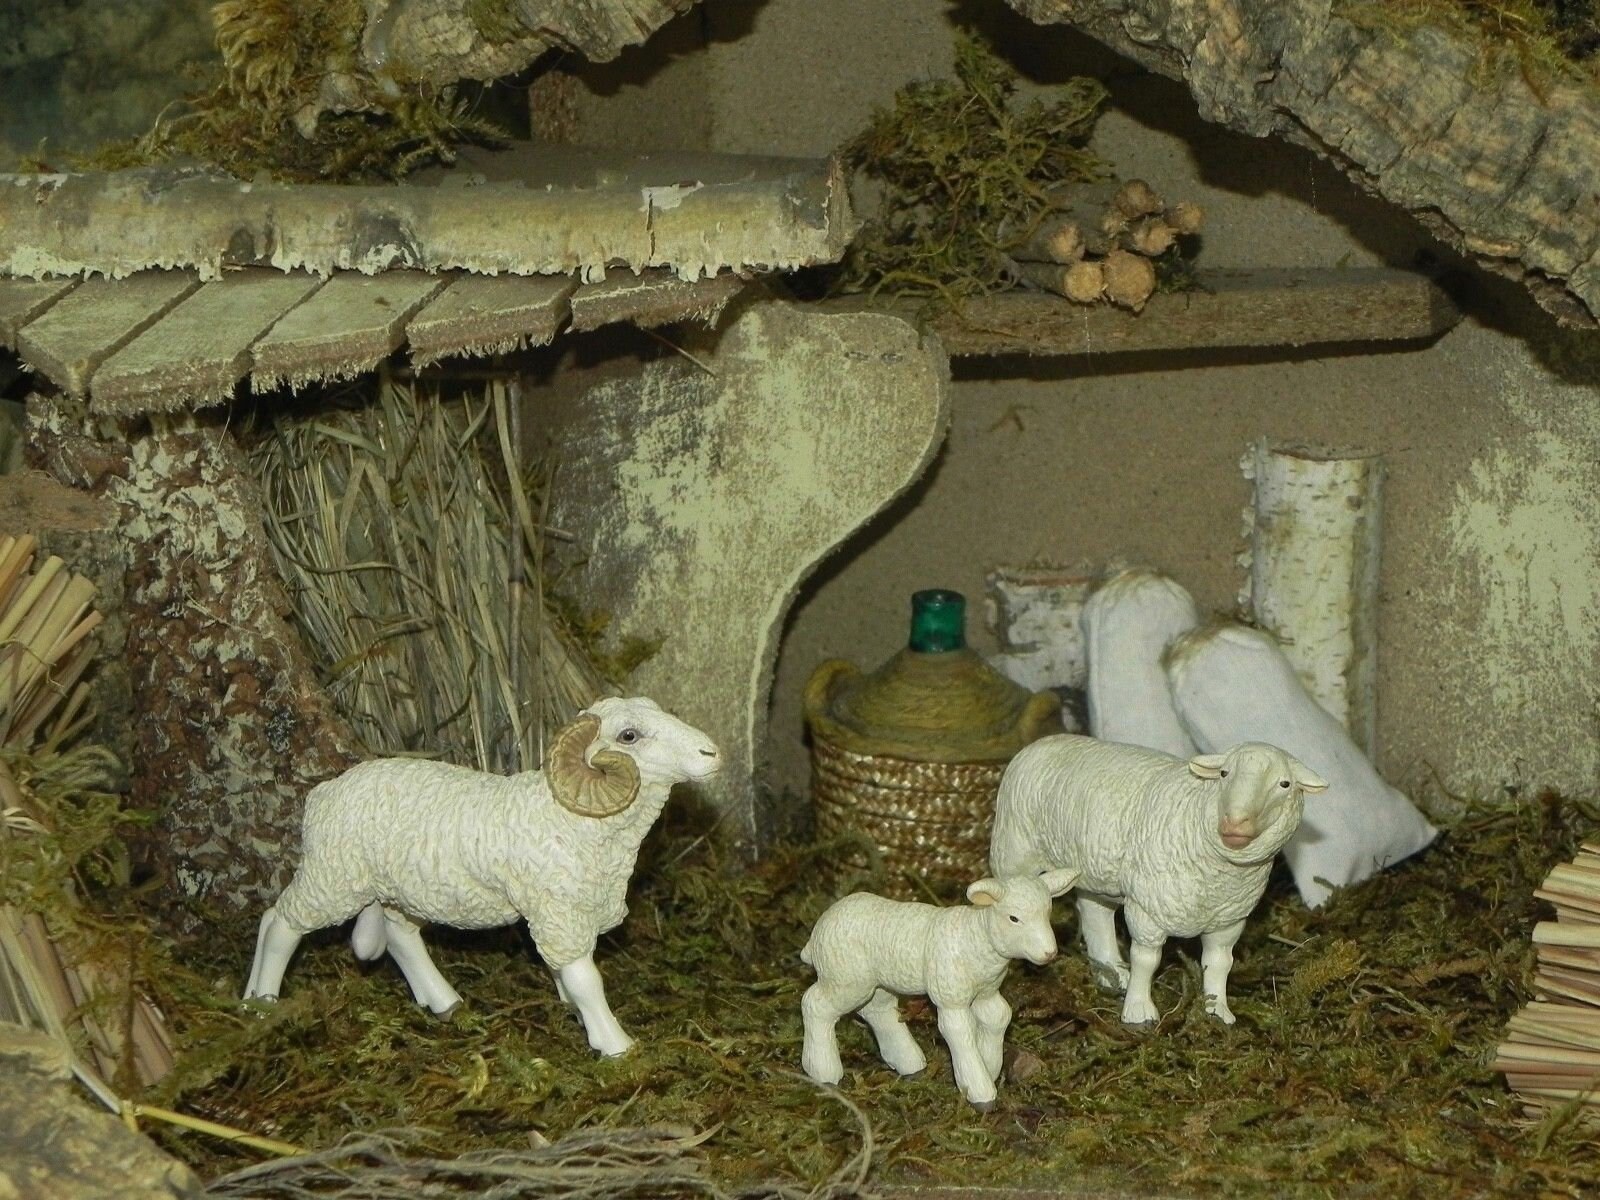 Papo Sheep Figurines Nativity Scene Presepio Figuras Para Nacimiento 2-7/16 H